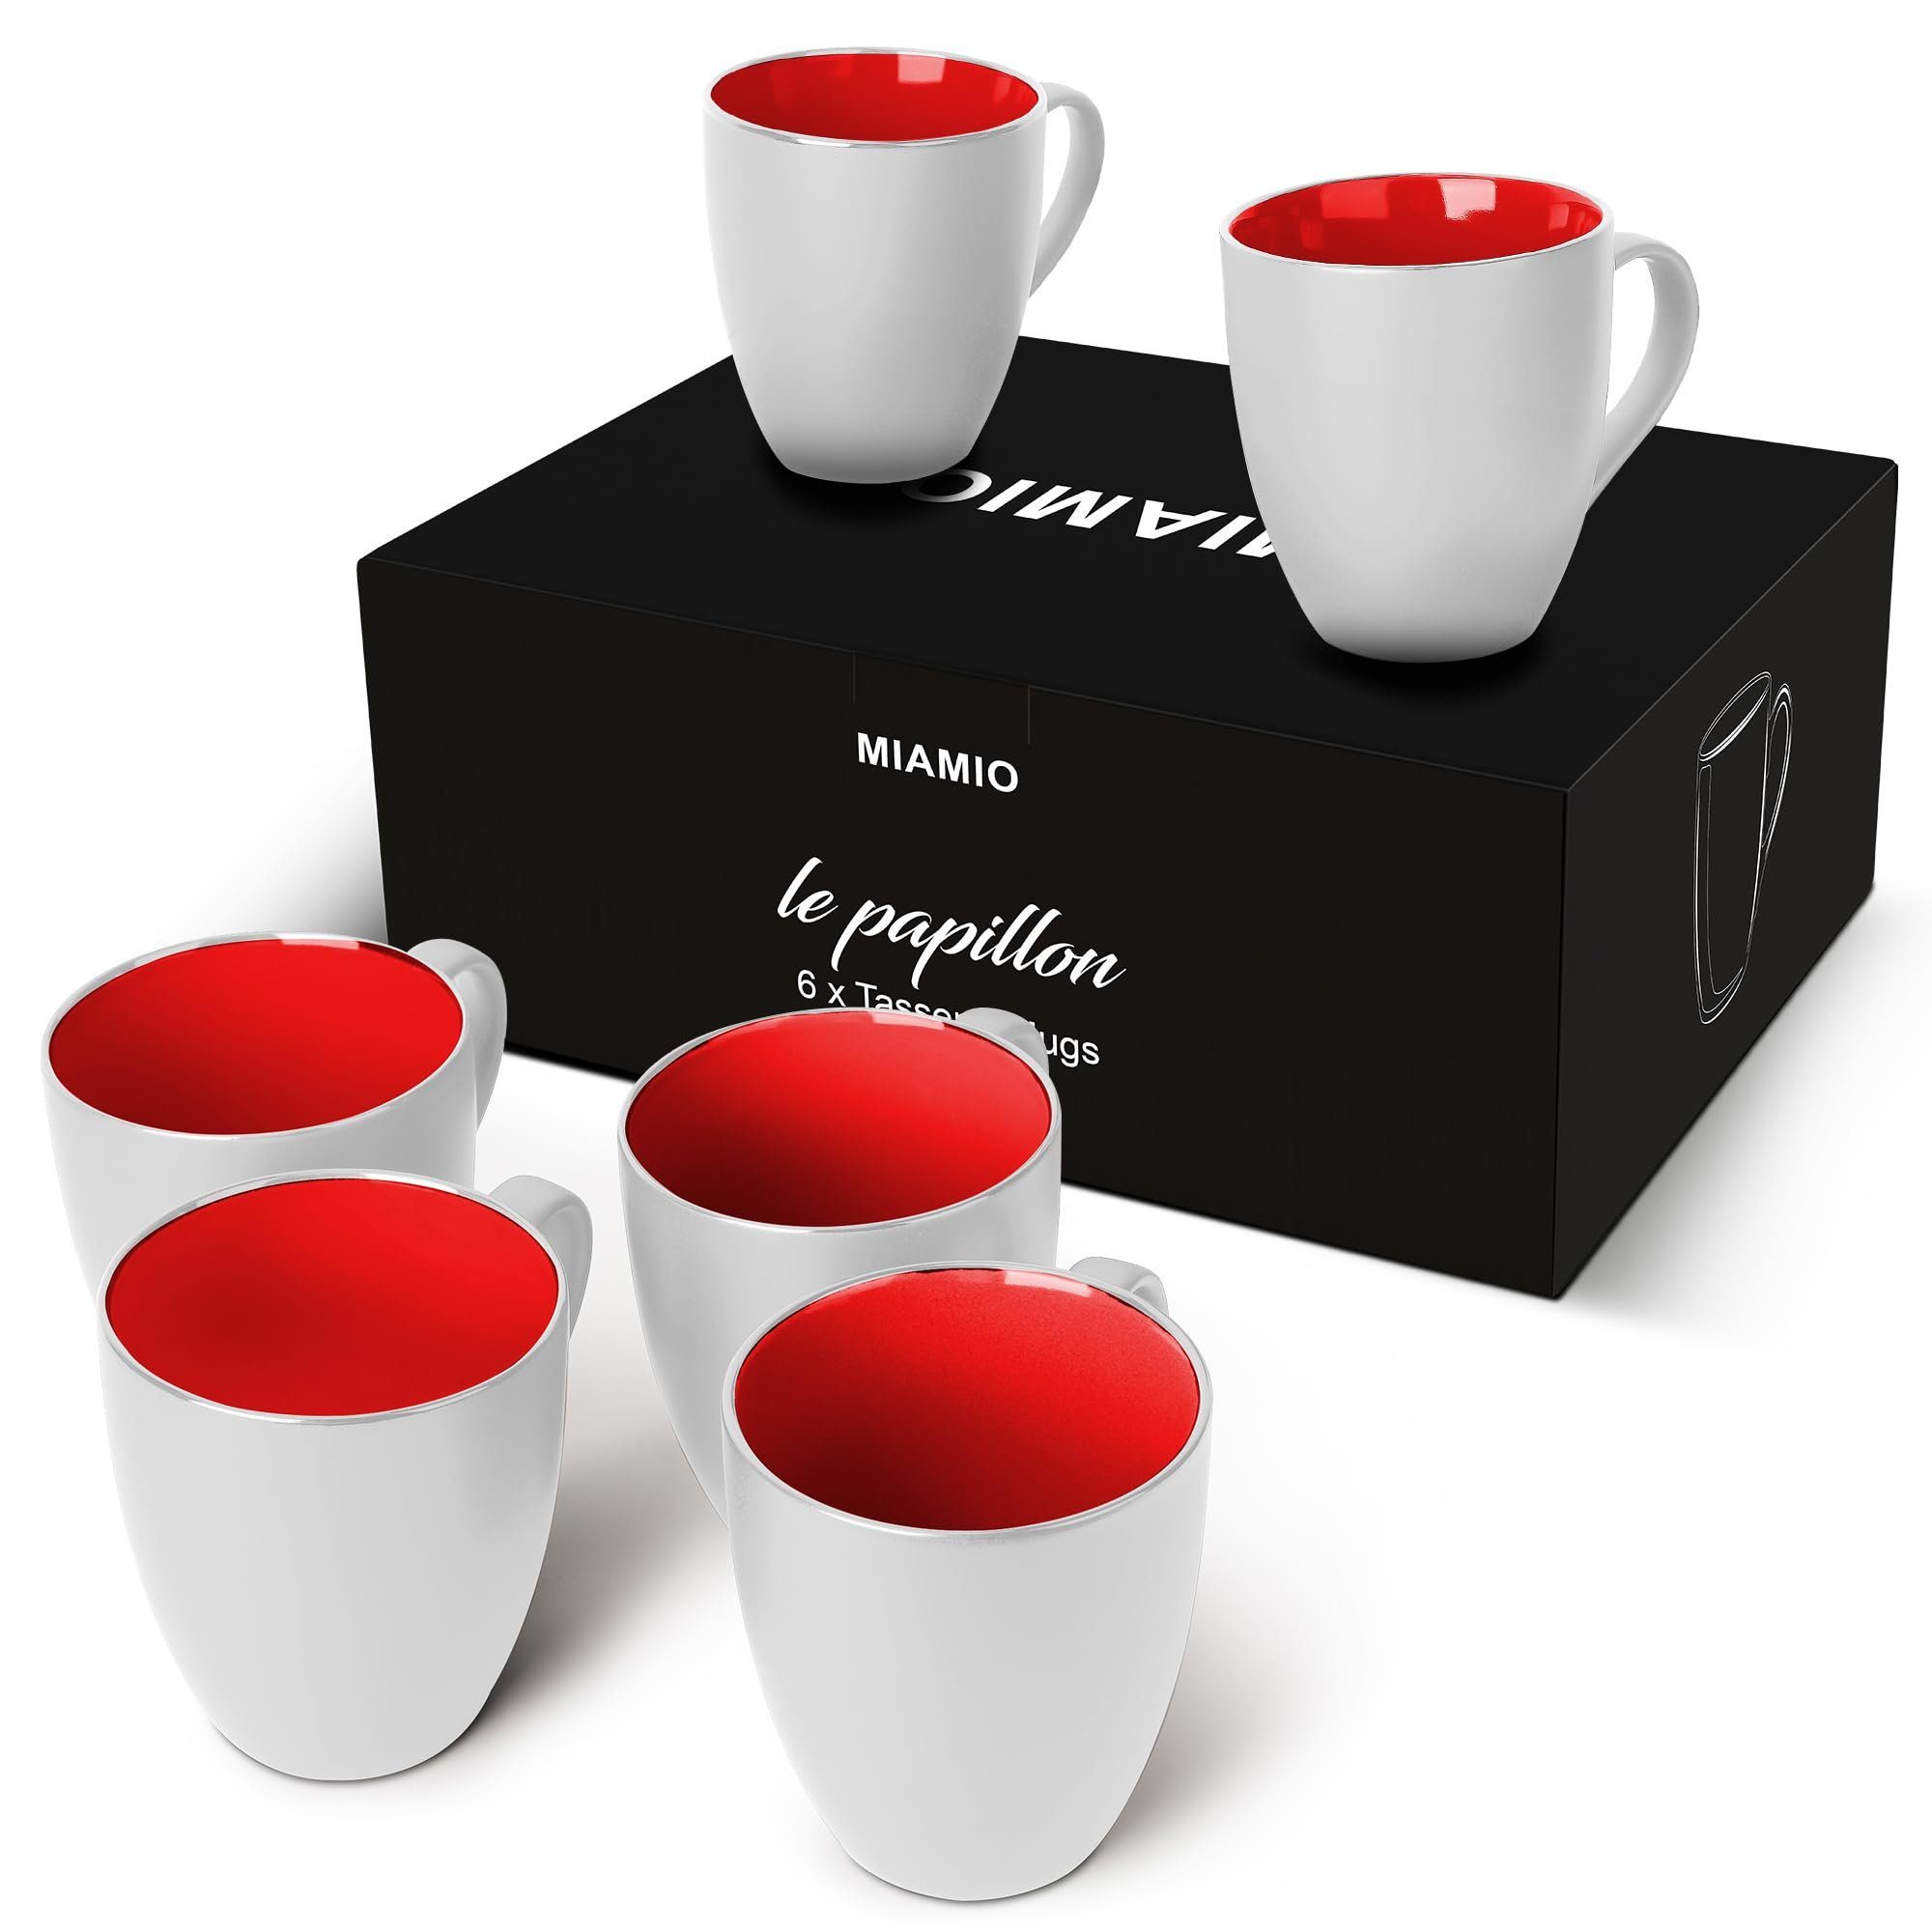 Kollektion Tasse MiaMio Set Weiß) Papillon Kaffeetassen (Außen rot Le